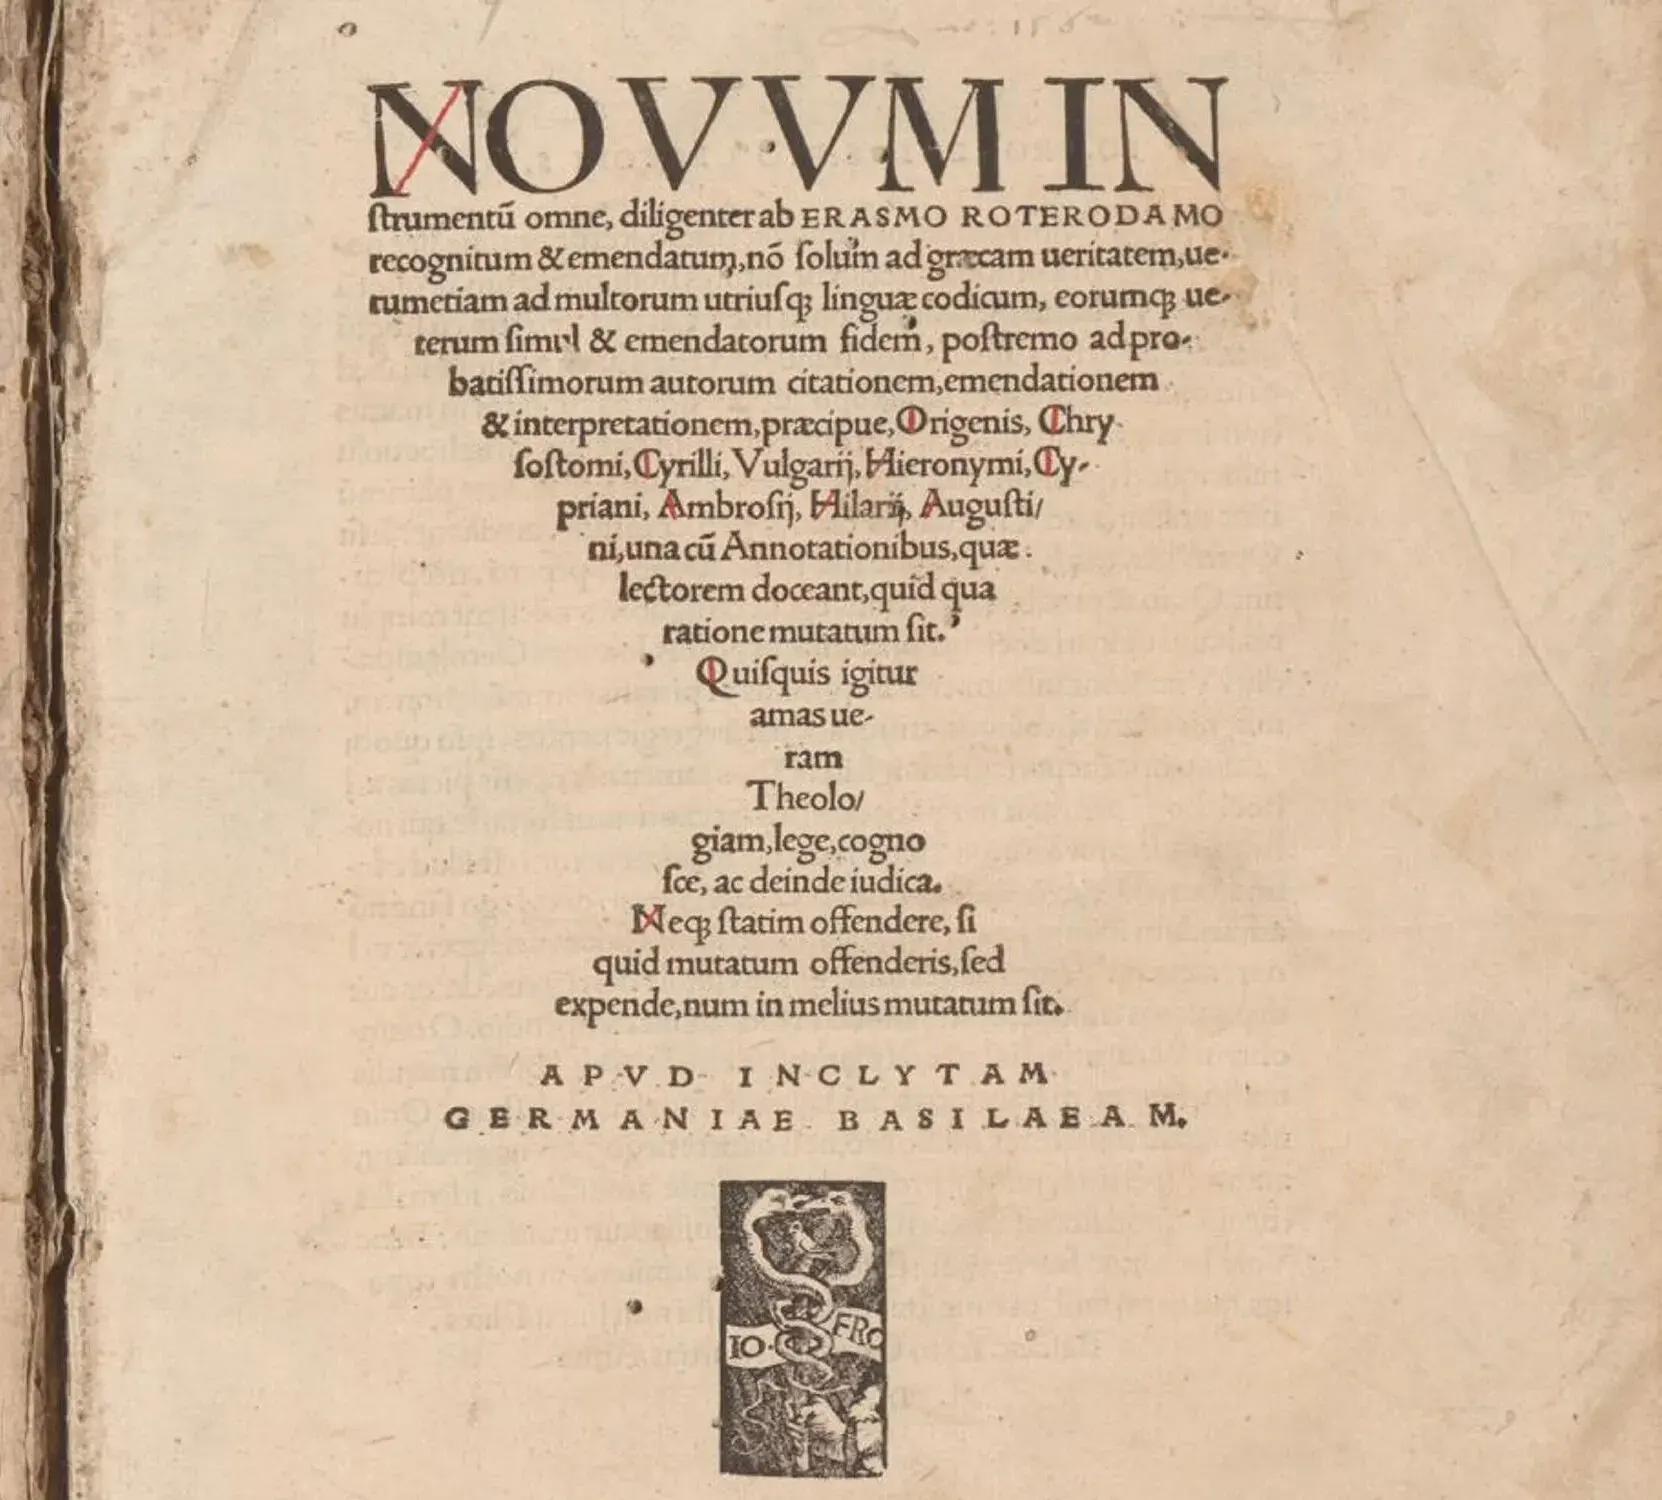 Desiderius Erasmus. Novum Instrumentum omne, 1516